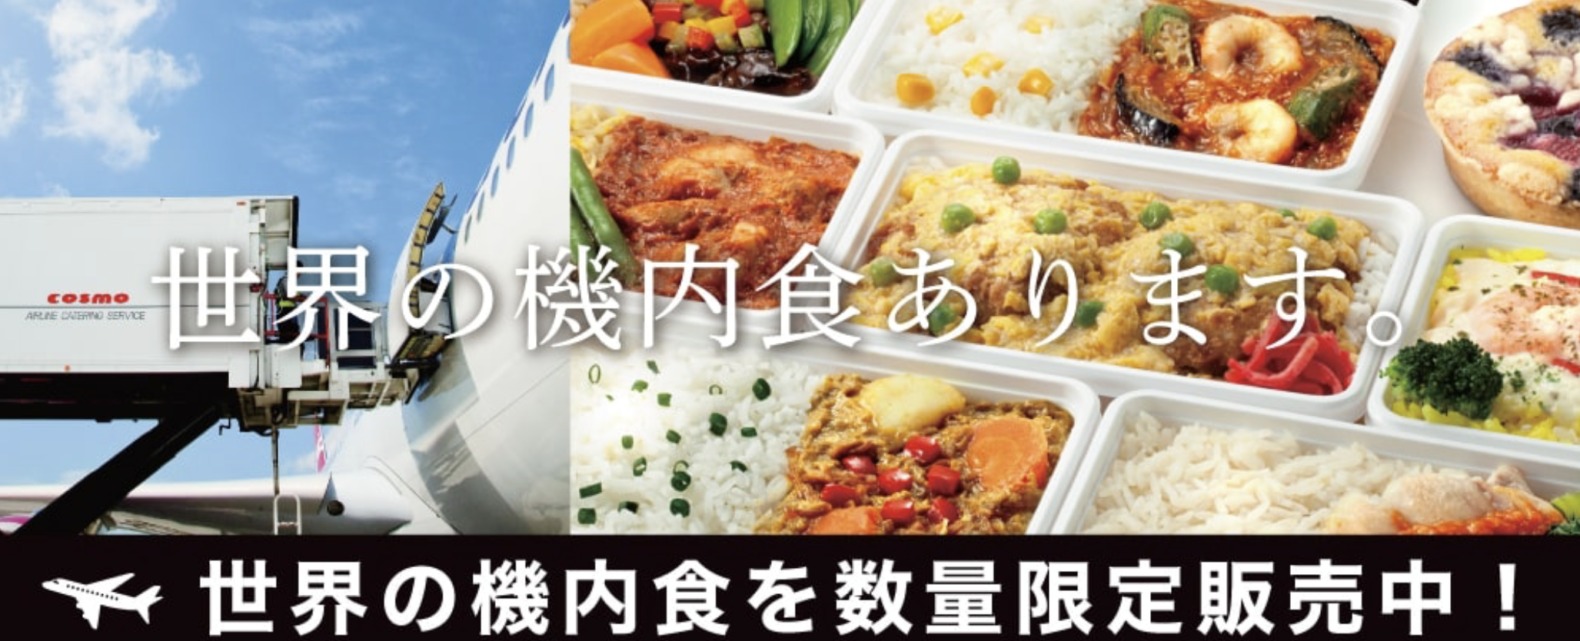 羽田空港から「世界の機内食」をお取り寄せできます。